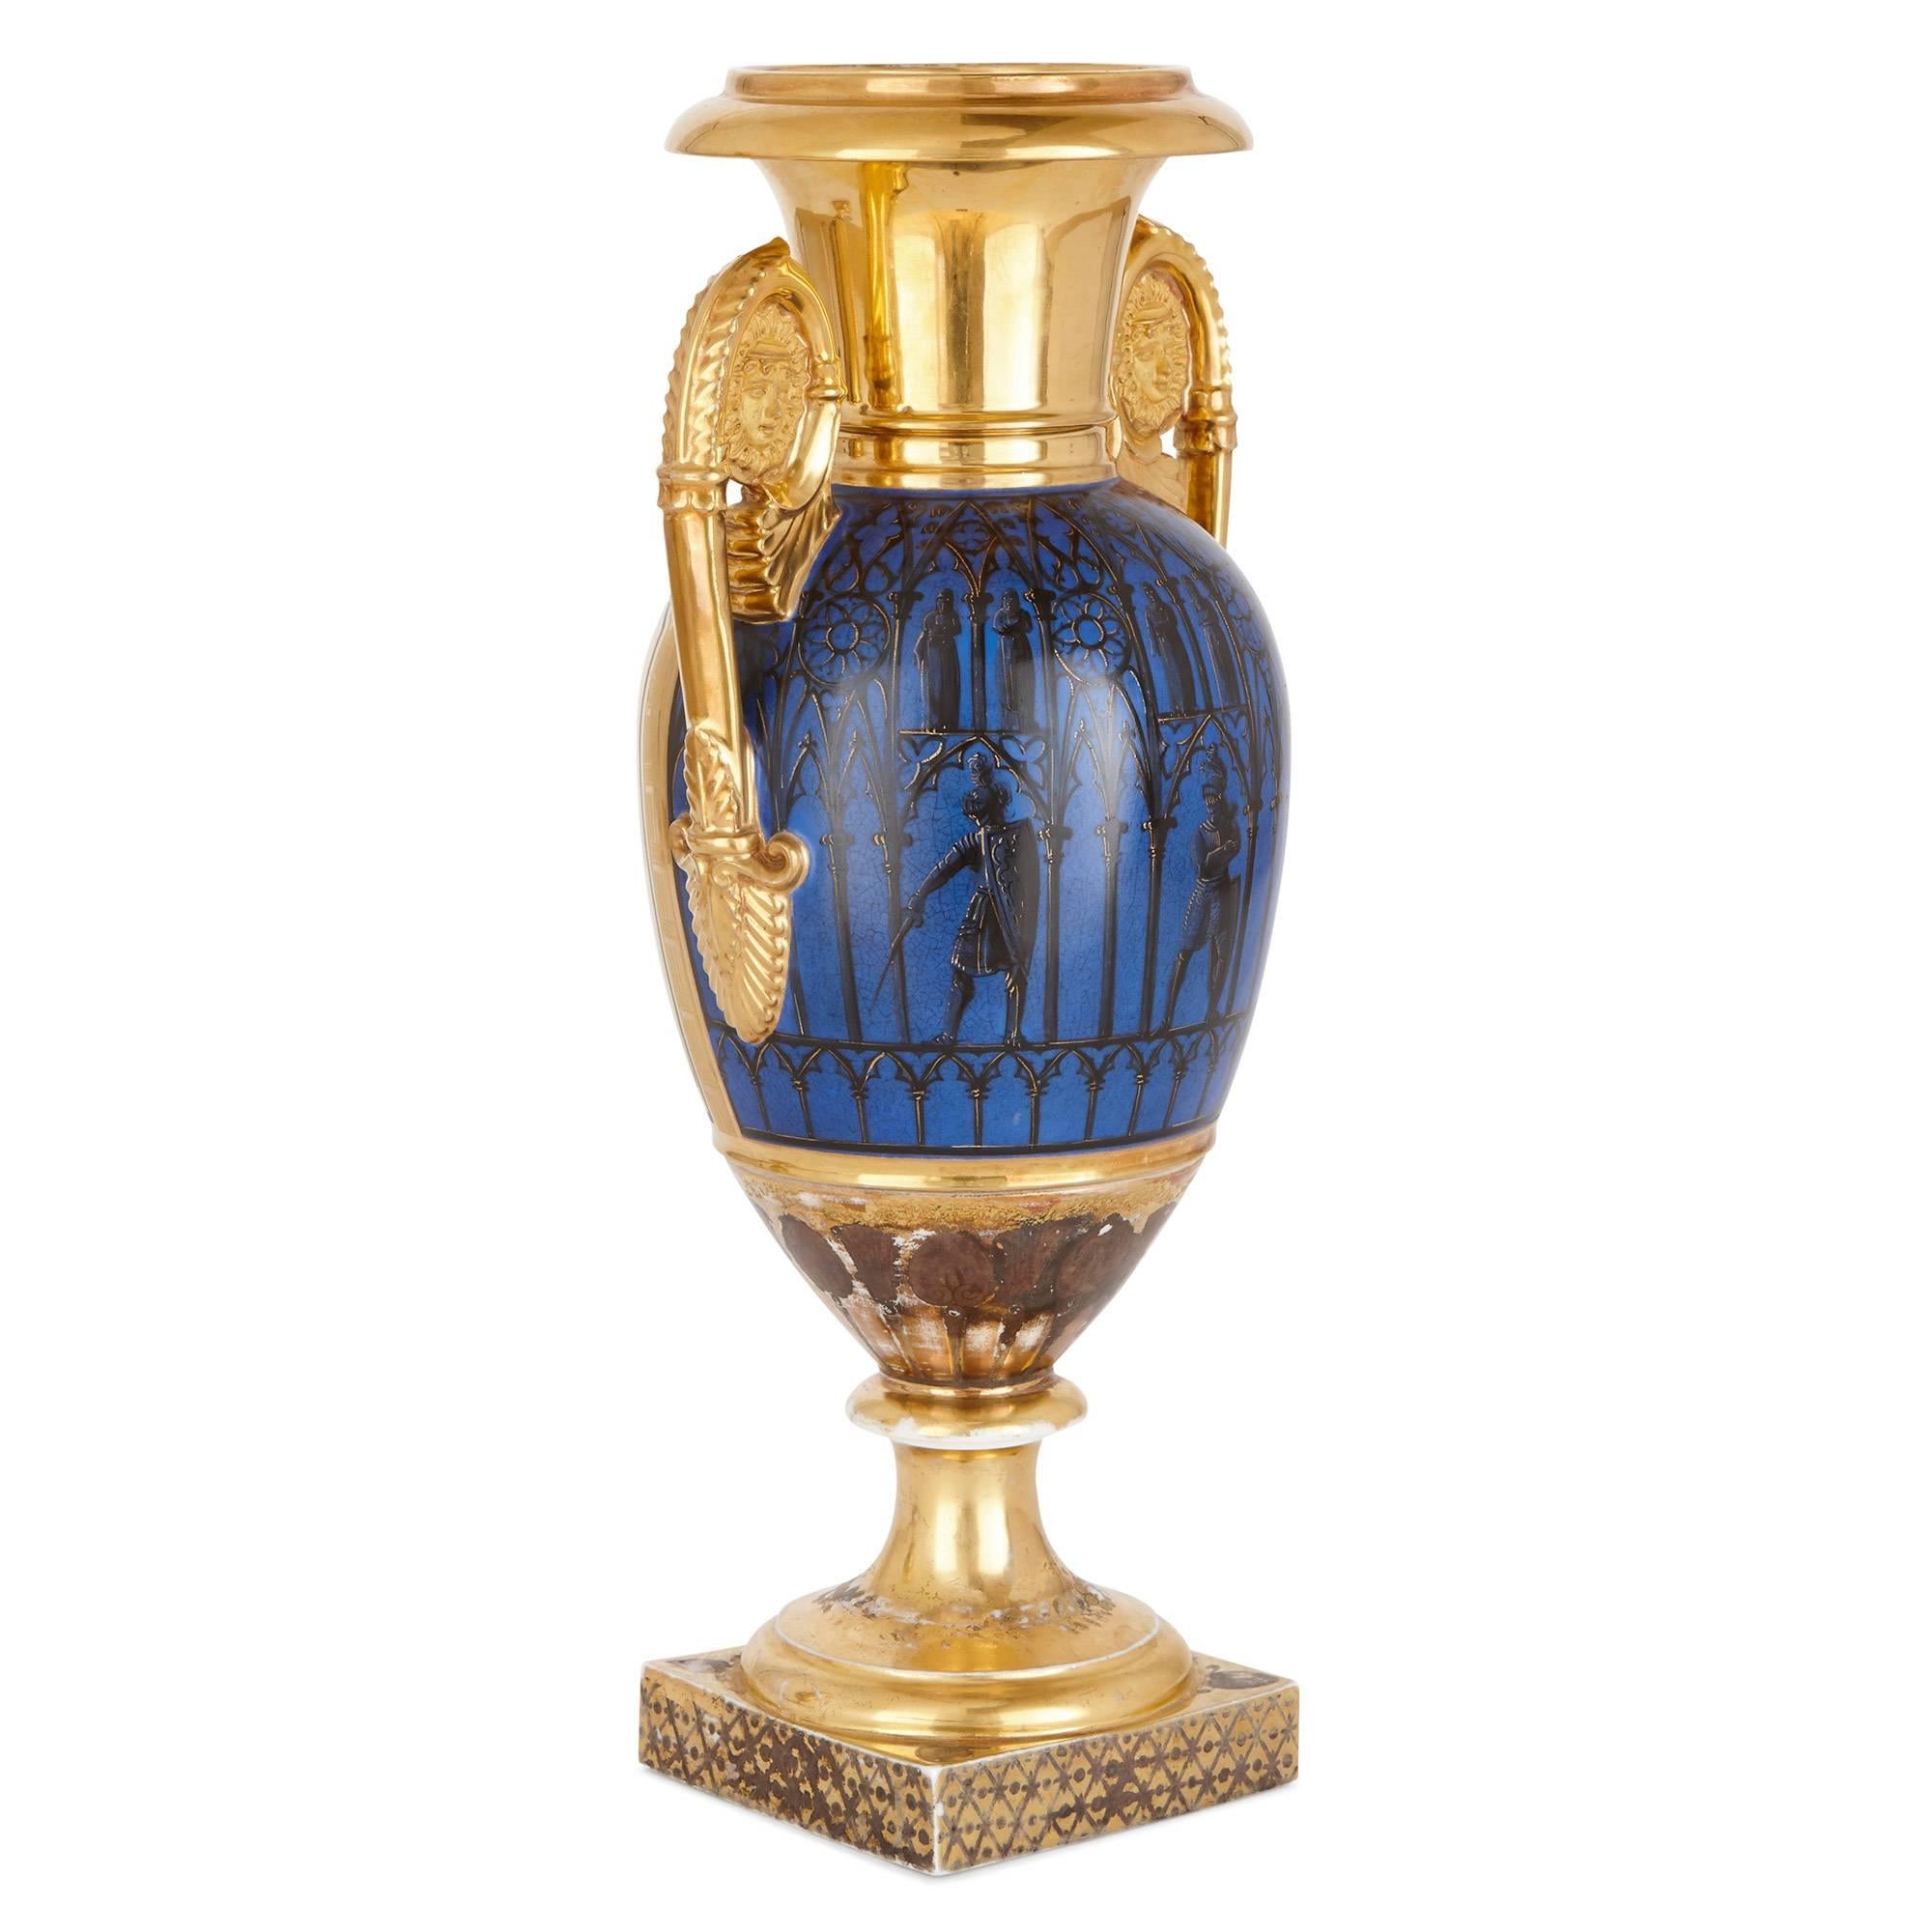 Ces excellents vases à fond doré sont des pièces anciennes de grande qualité, datant de la période Empire en France au début du XIXe siècle. Chaque vase repose sur une base carrée, est monté avec deux poignées à volutes insérées dans des masques